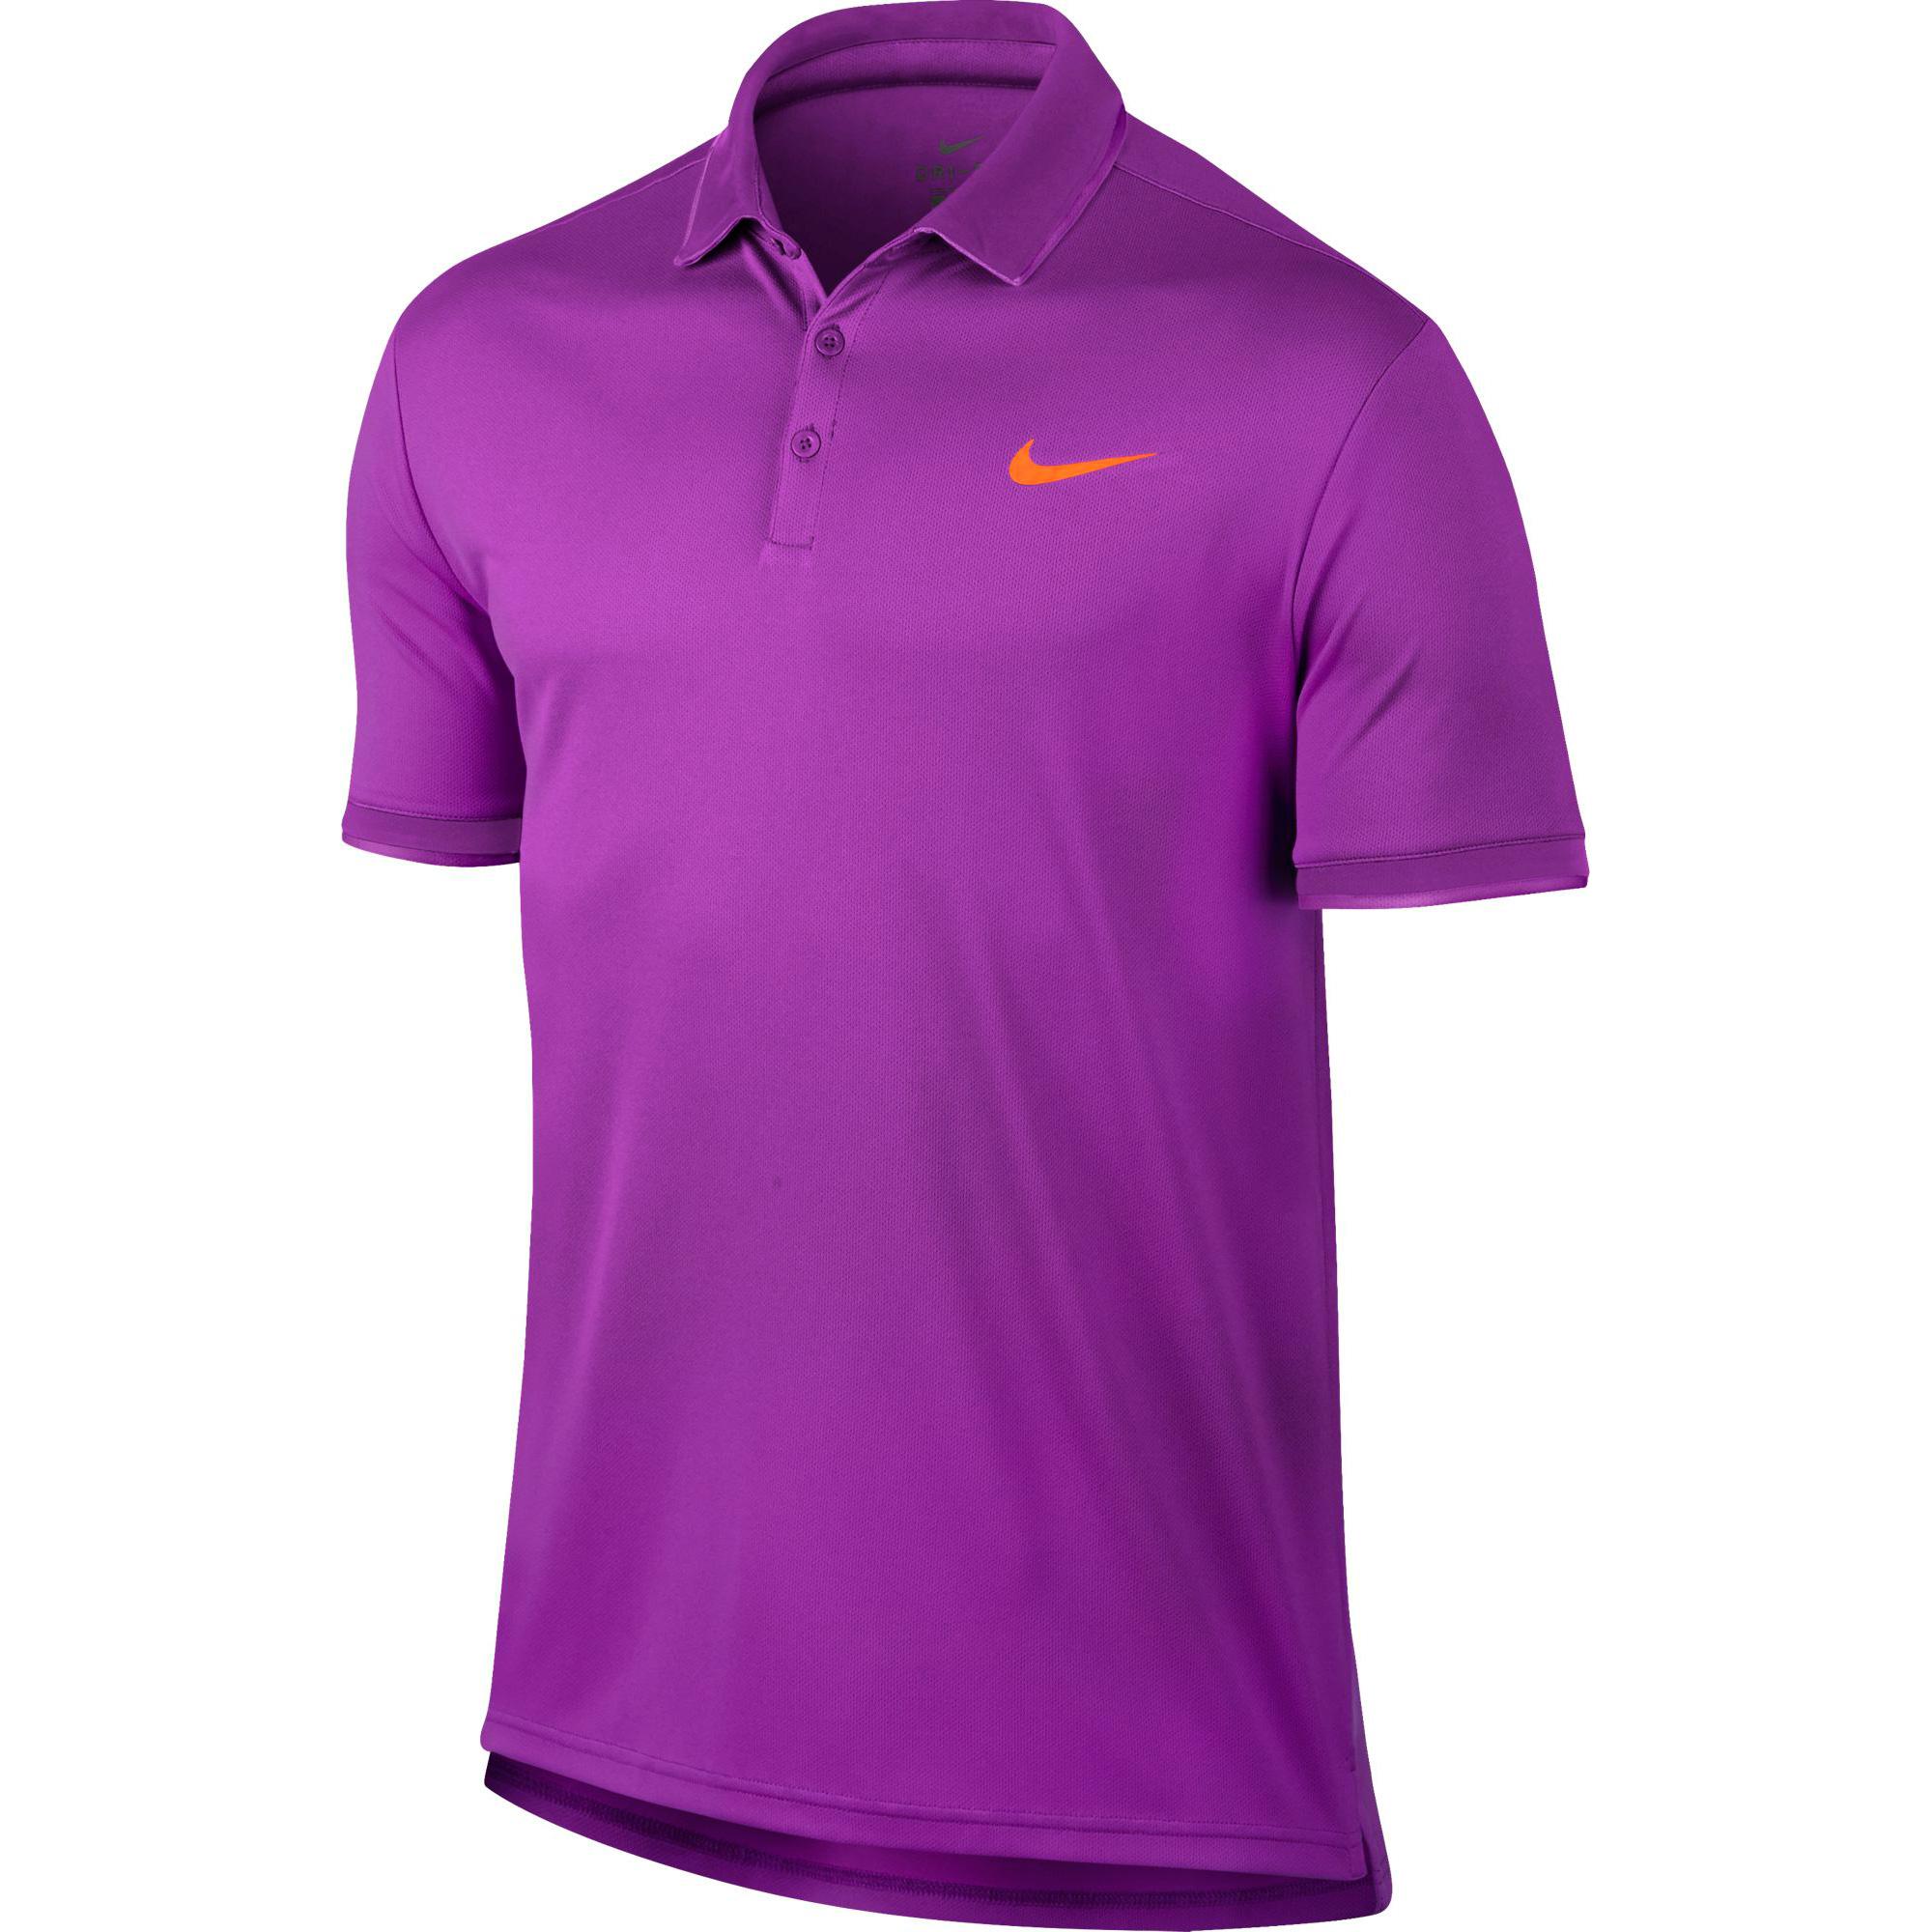 Nike Mens Dry Tennis Polo - Vivid Purple/Tart - Tennisnuts.com